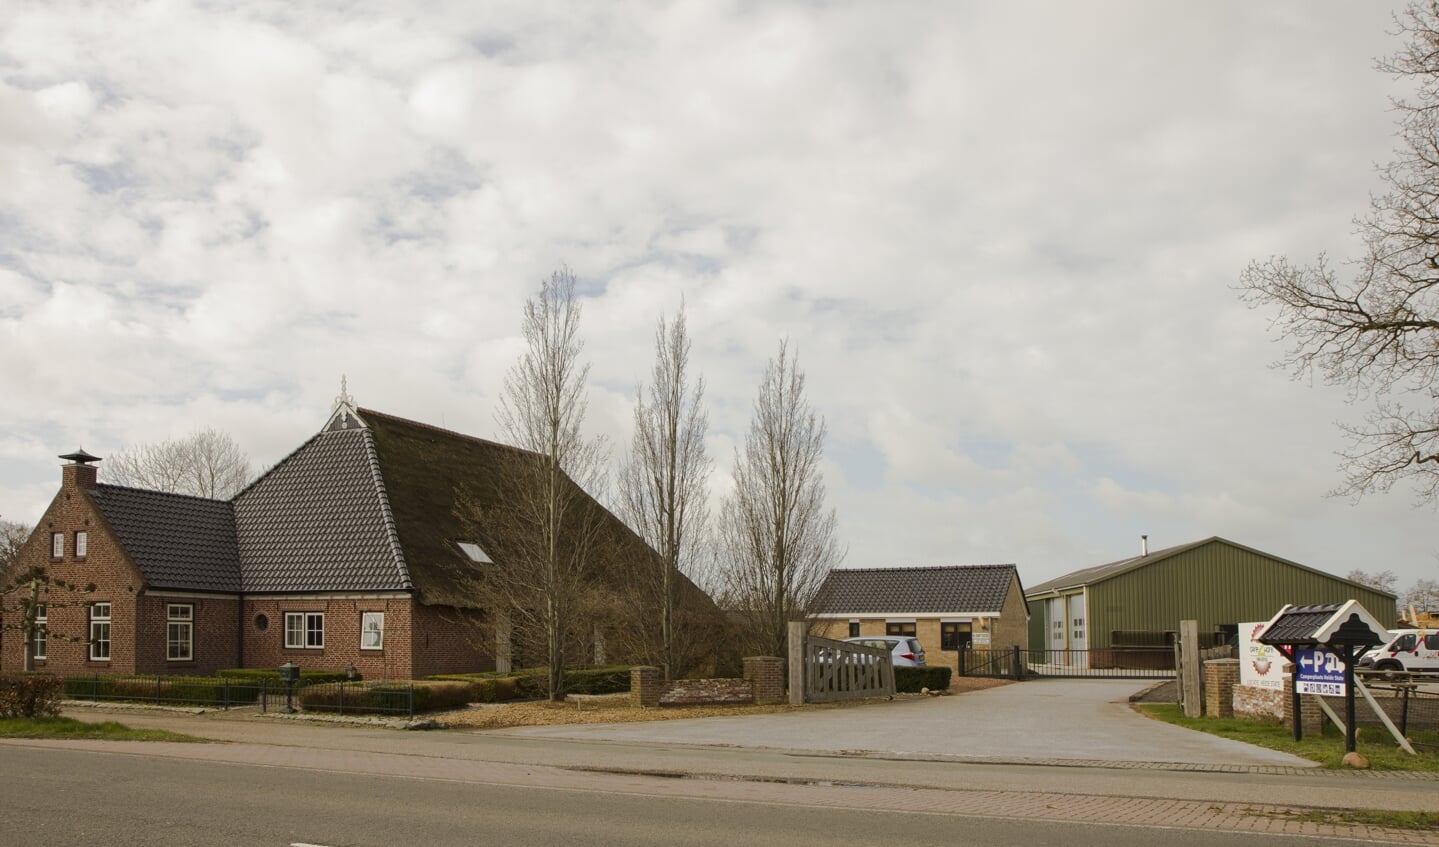 Het terrein van Woudweg 17 in Noardburgum - locatie Heide State - wordt omgebouwd tot recreatielocatie door de cliënten en werkbegeleiders van Royal Werkbedrijf.